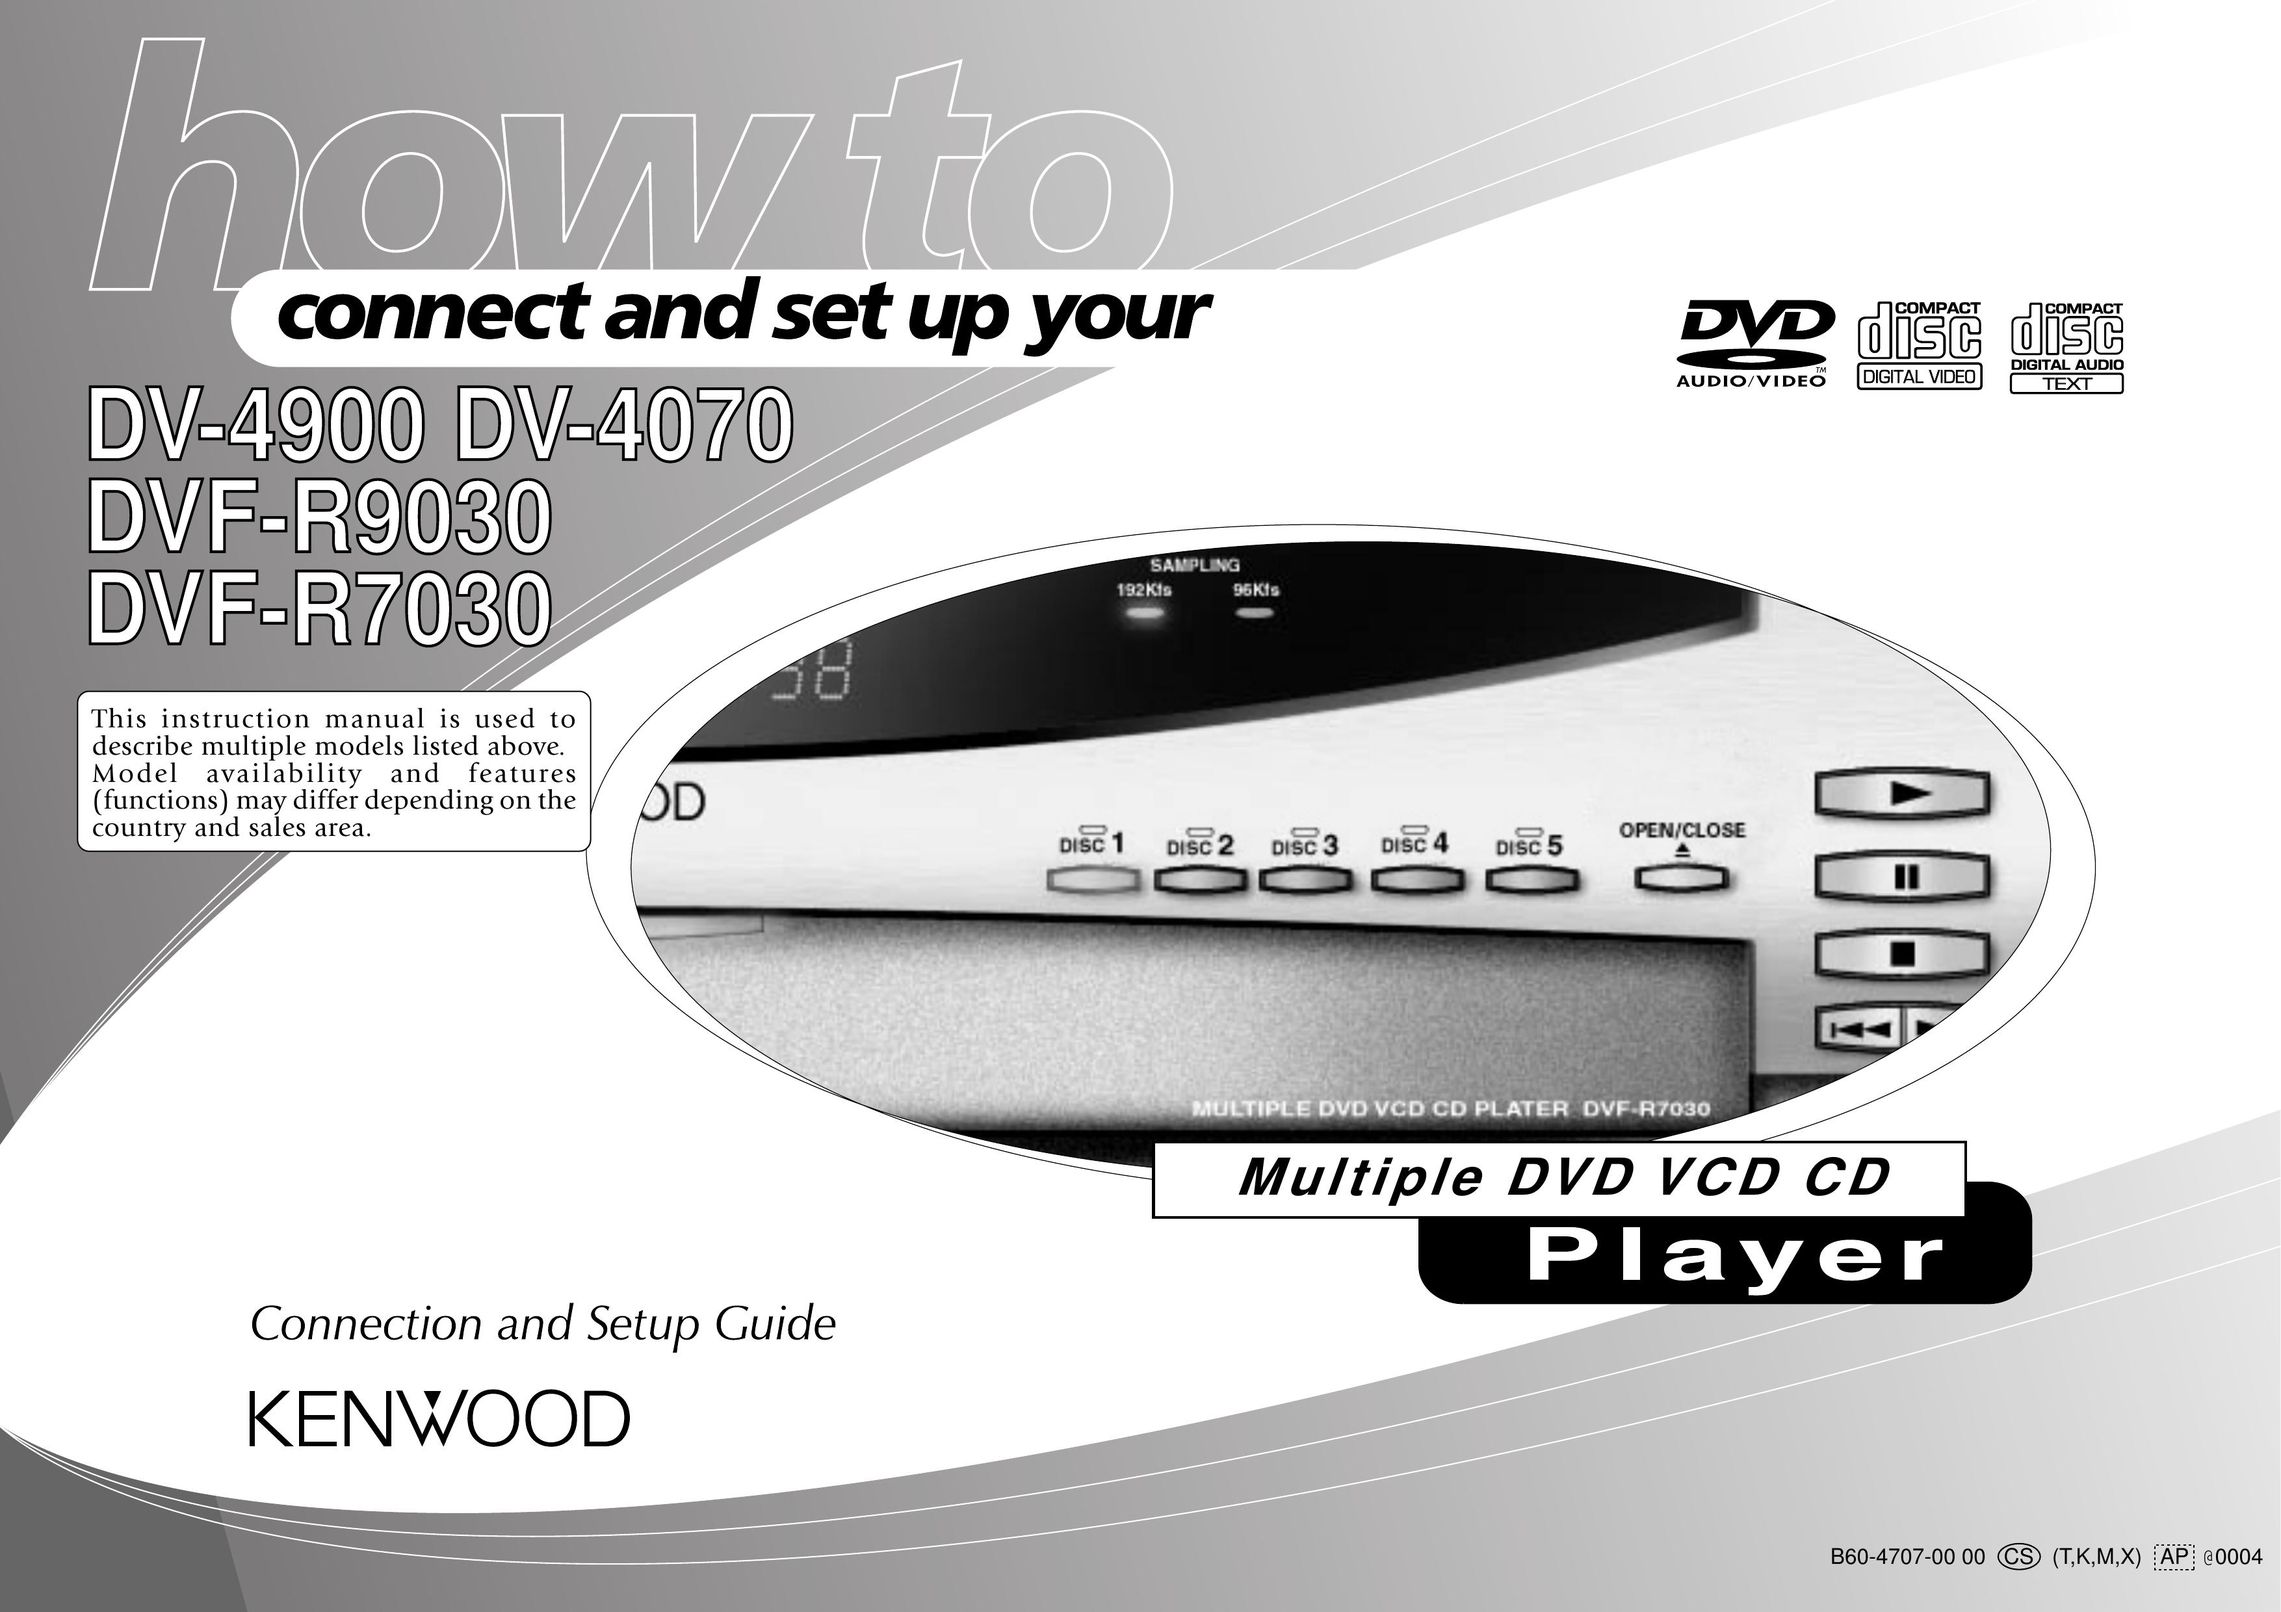 Kenwood DV-4070 DVD Player User Manual